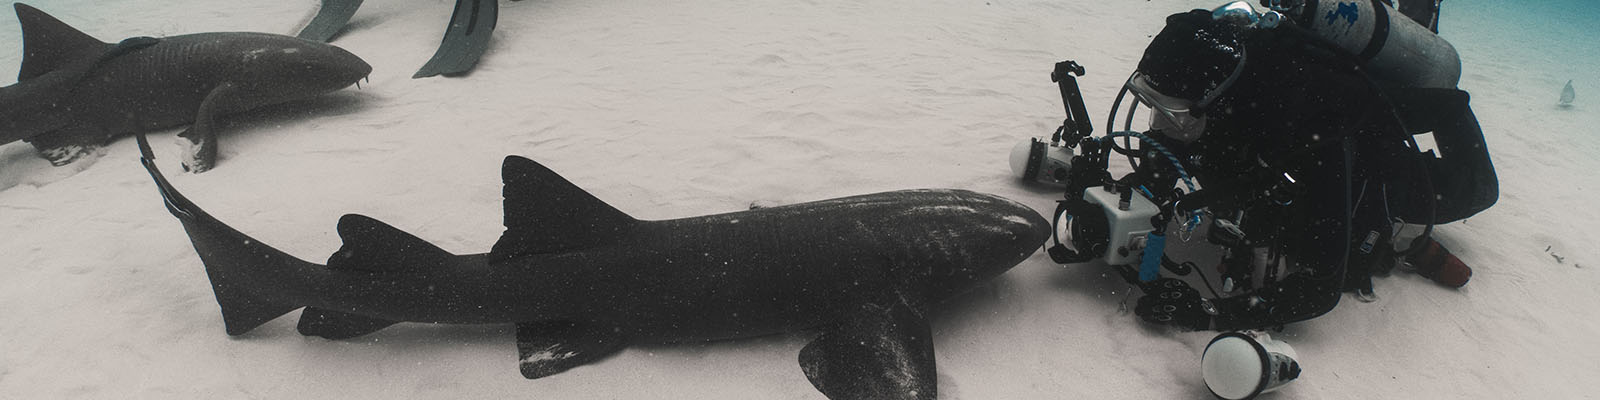 Predators in Peril – Shark Preservation